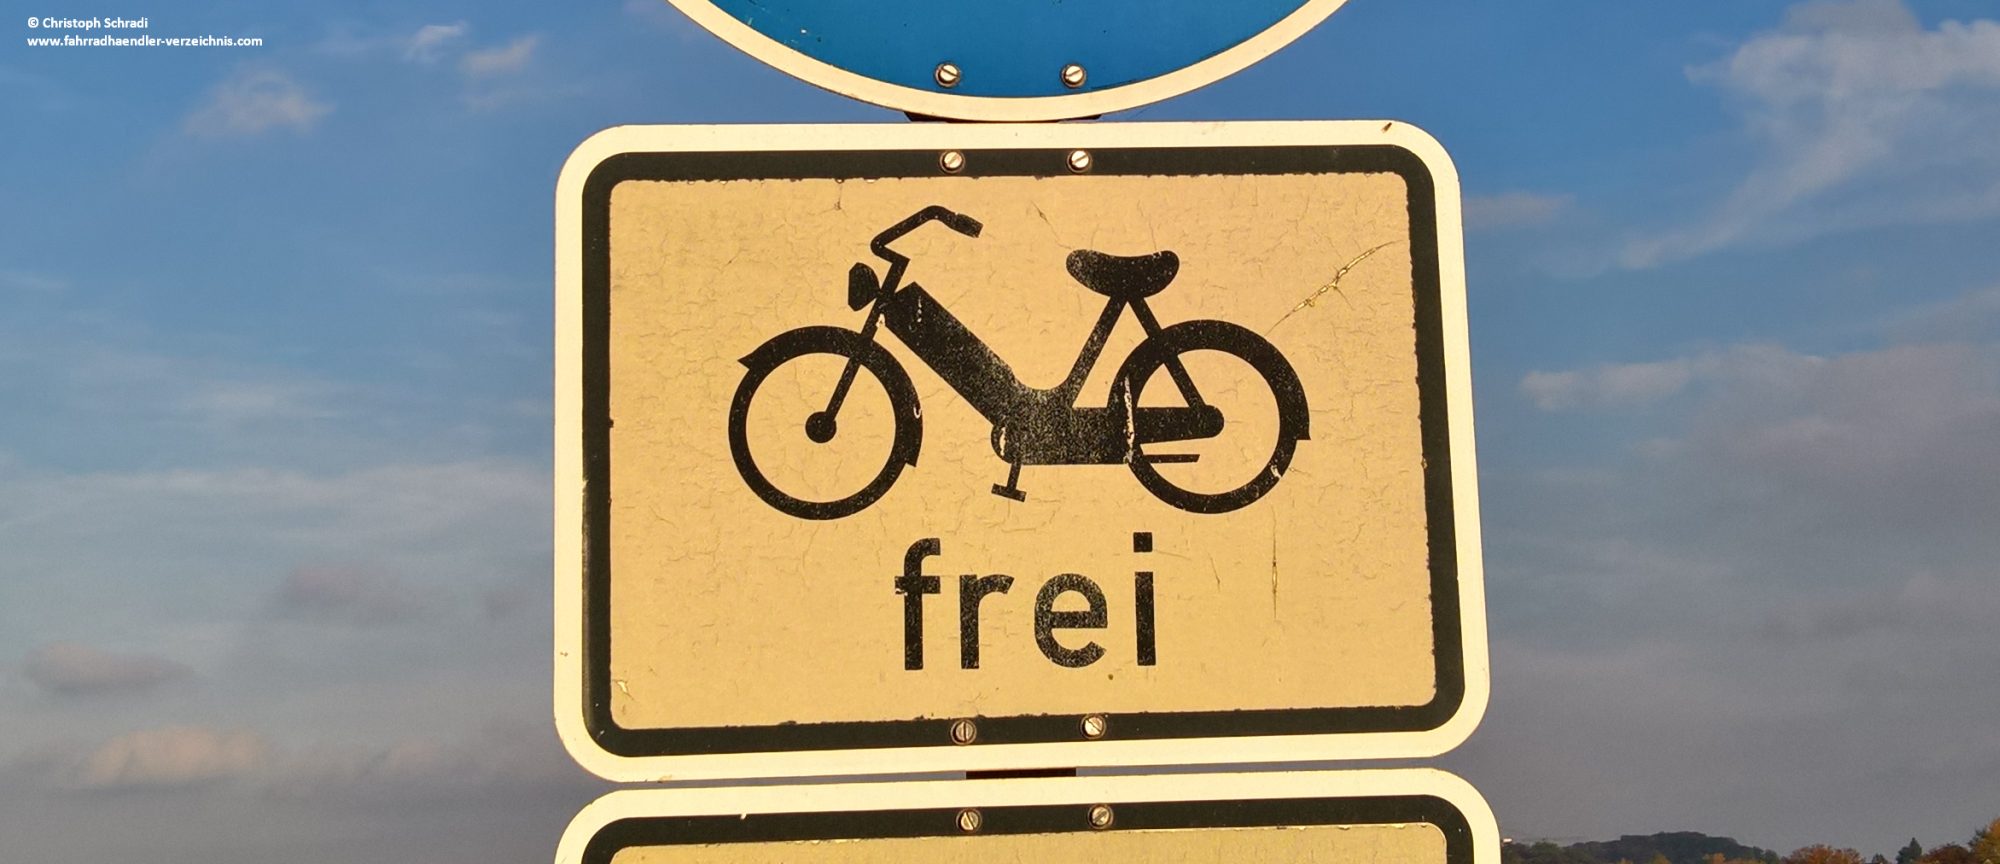 Das Mofa-frei Verkehrszeichen bekommt einen Bruder - das E-Bike-frei Schild